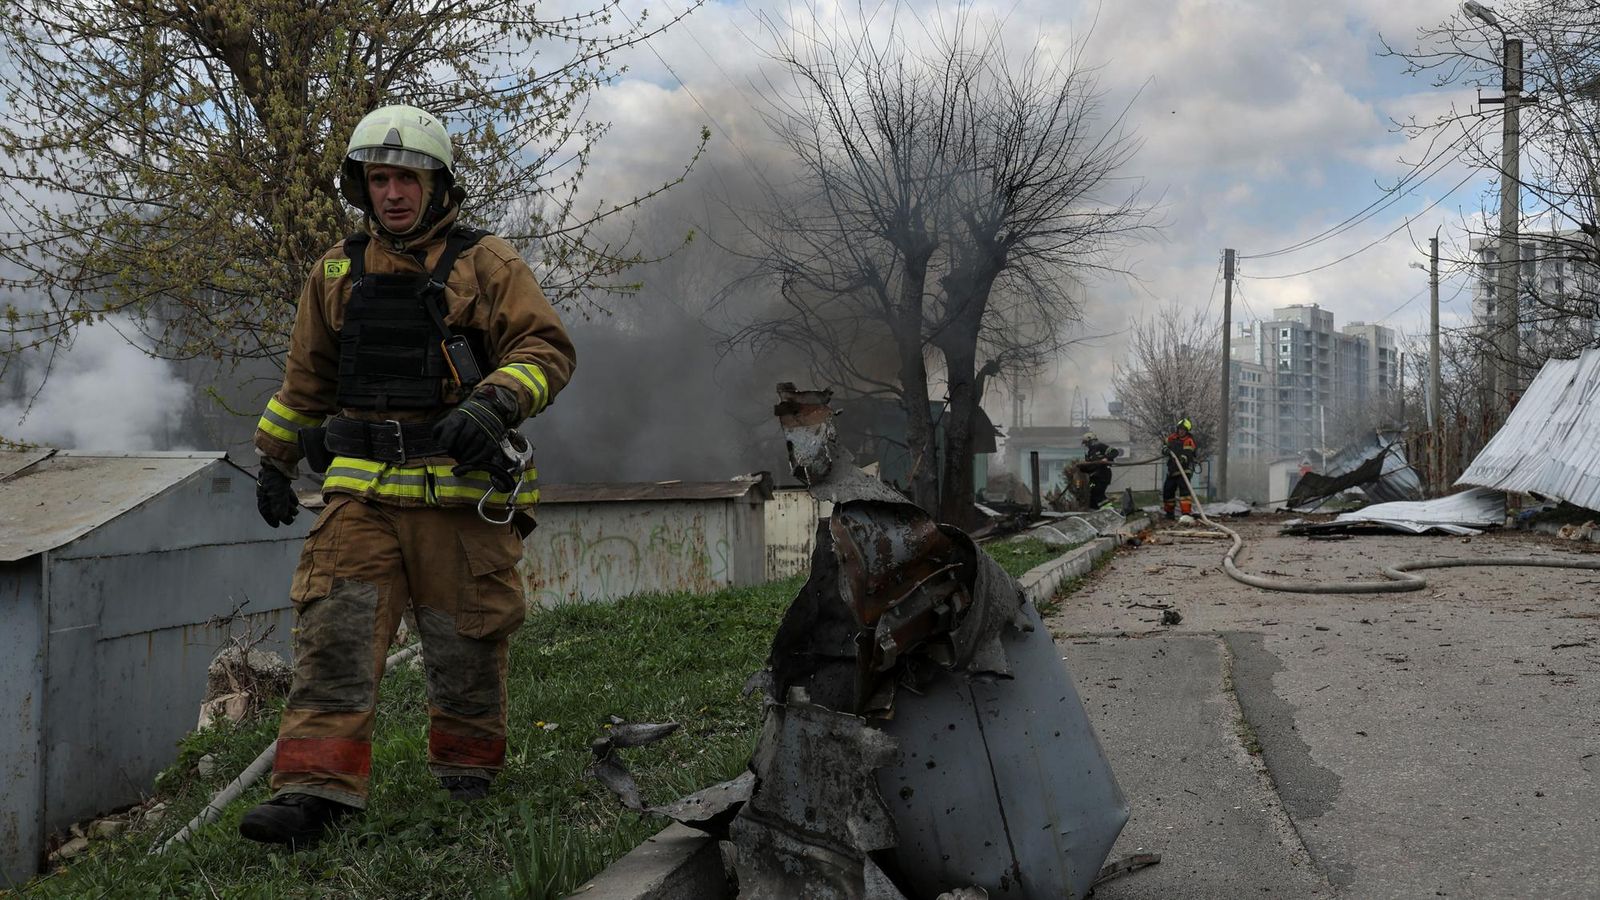 Vojna na Ukrajine: Z Charkovskej oblasti evakuovali viac než štyritisíc ľudí